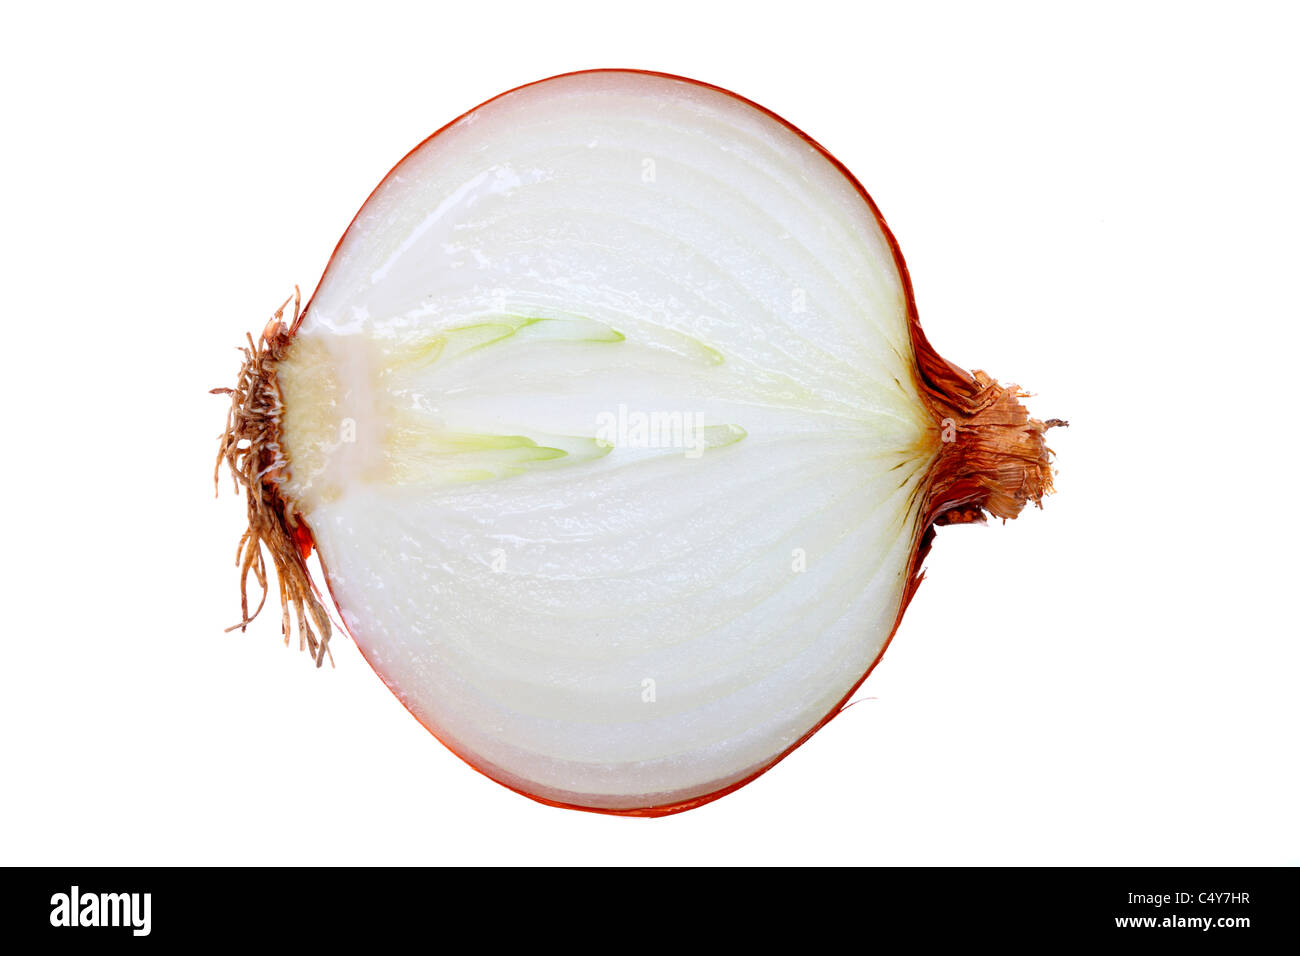 Vegetable, onion, garden onion, Stock Photo